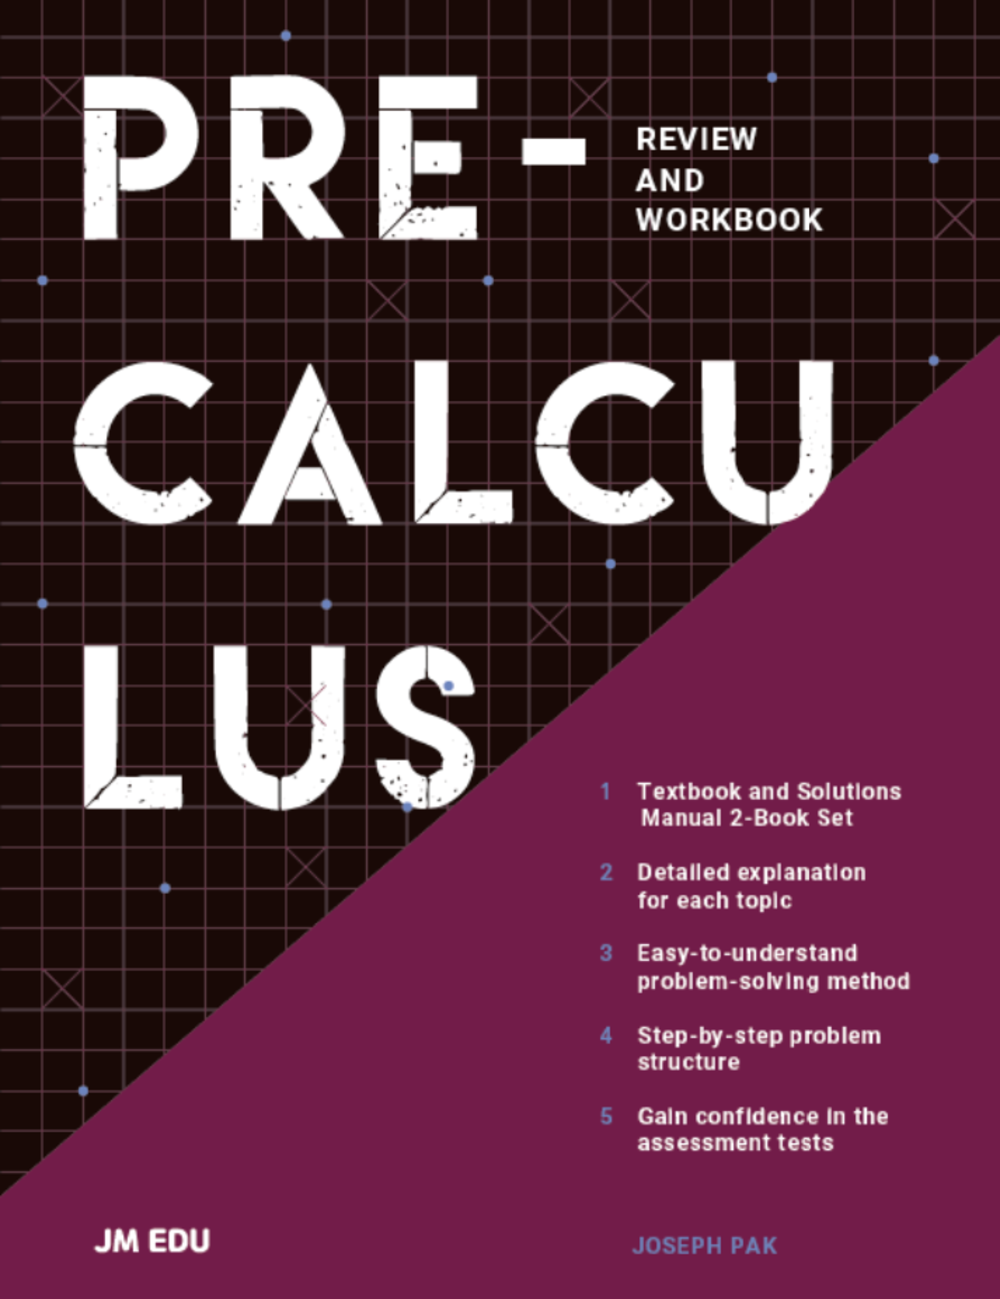 pre calculus